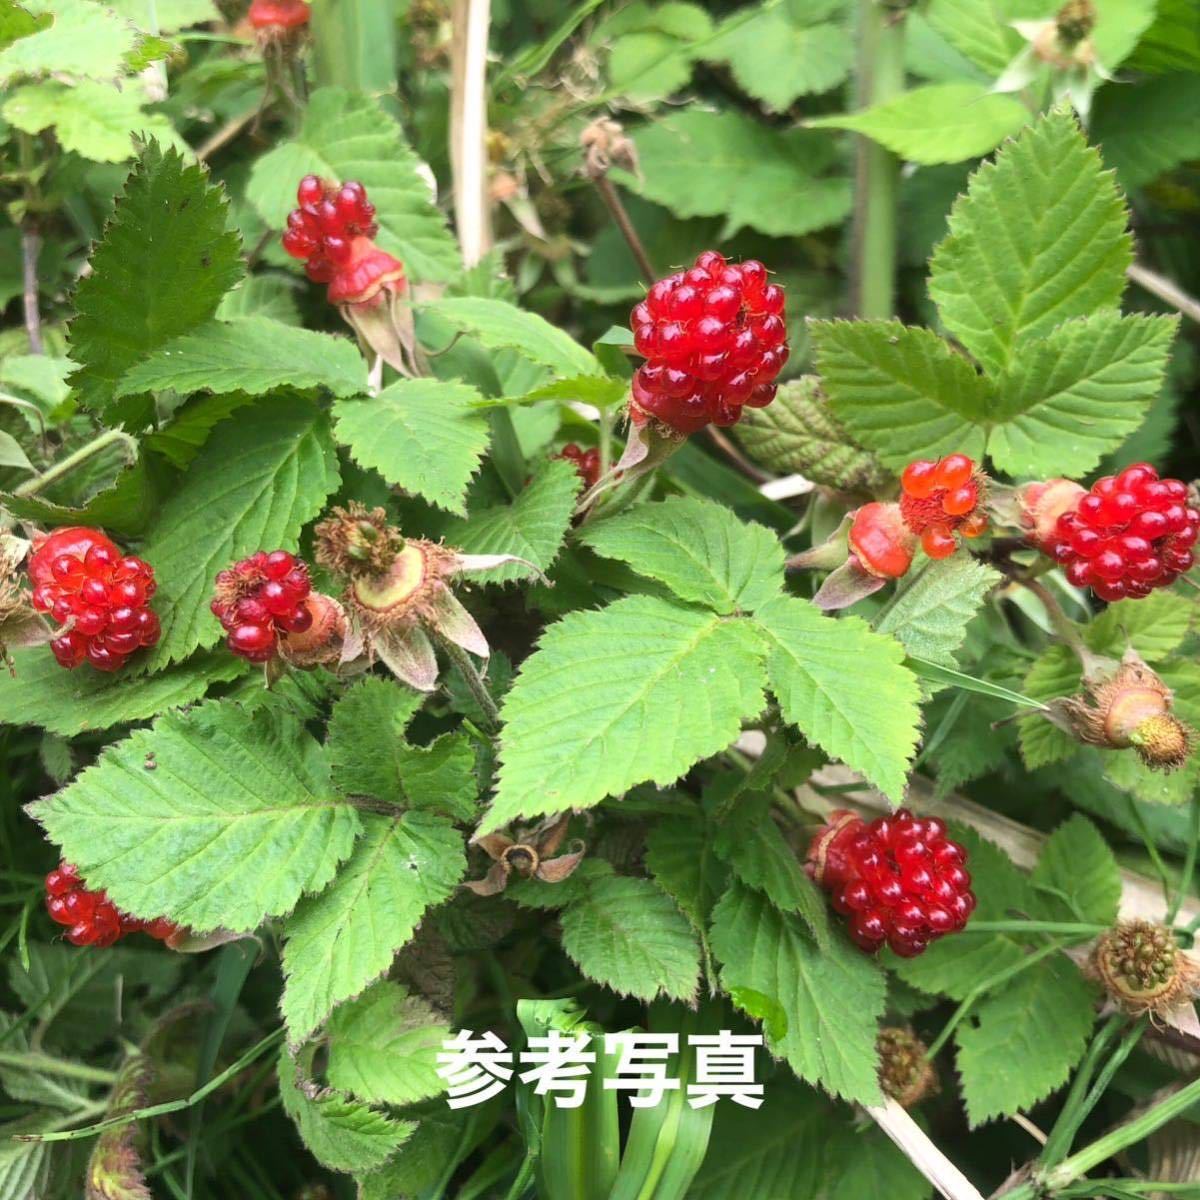 ** tree . seedling ( large stock )4 stock ** flower . attaching ** 2600 jpy -1100 jpy ..ksa strawberry ... strawberry seedling 